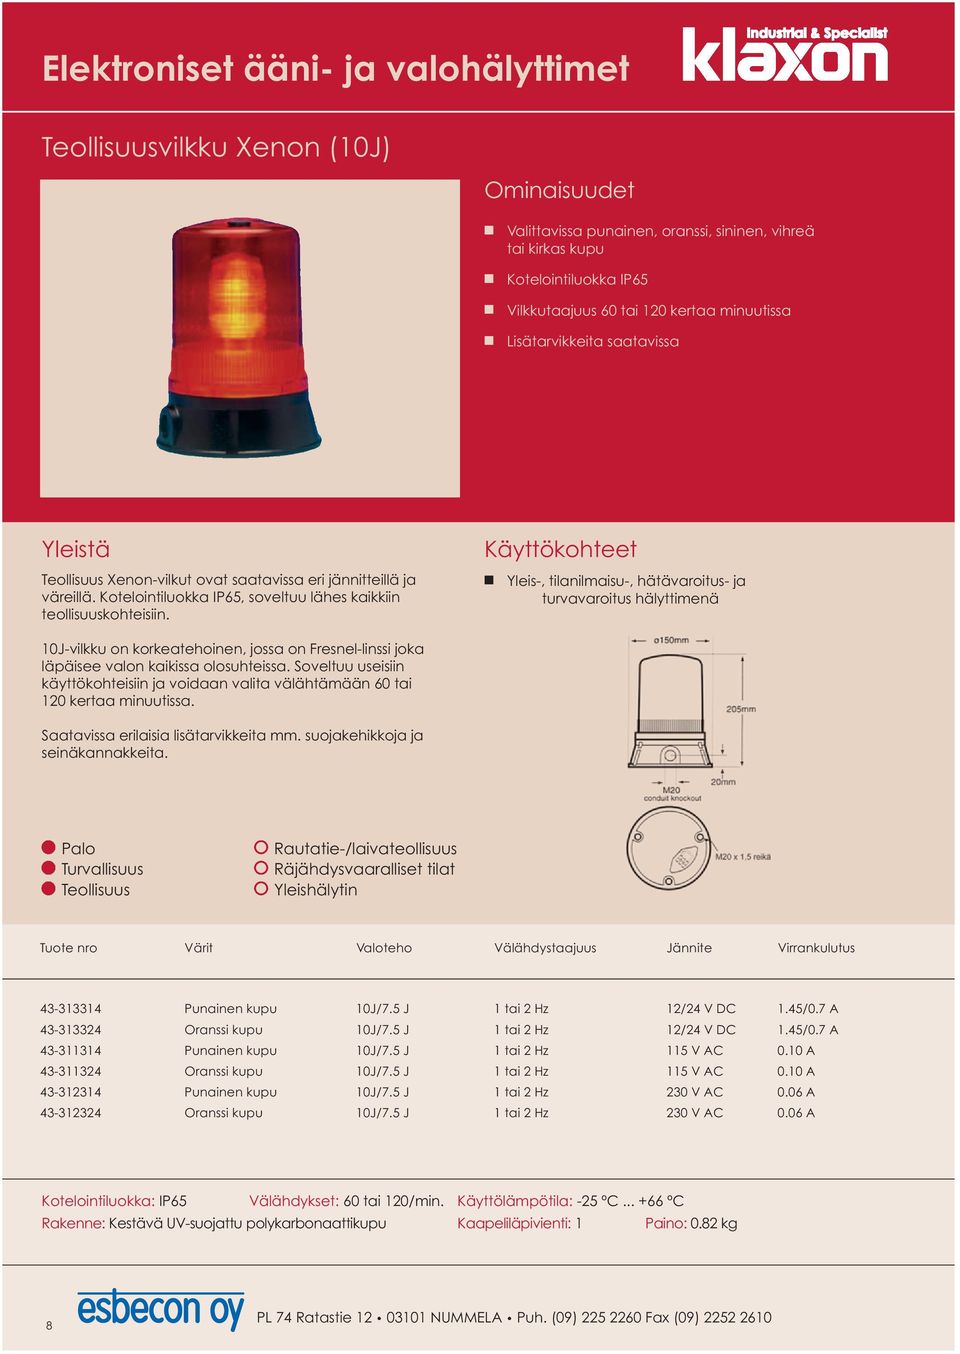 Yleis-, tilanilmaisu-, hätävaroitus- ja turvavaroitus hälyttimenä 10J-vilkku on korkeatehoinen, jossa on Fresnel-linssi joka läpäisee valon kaikissa olosuhteissa.